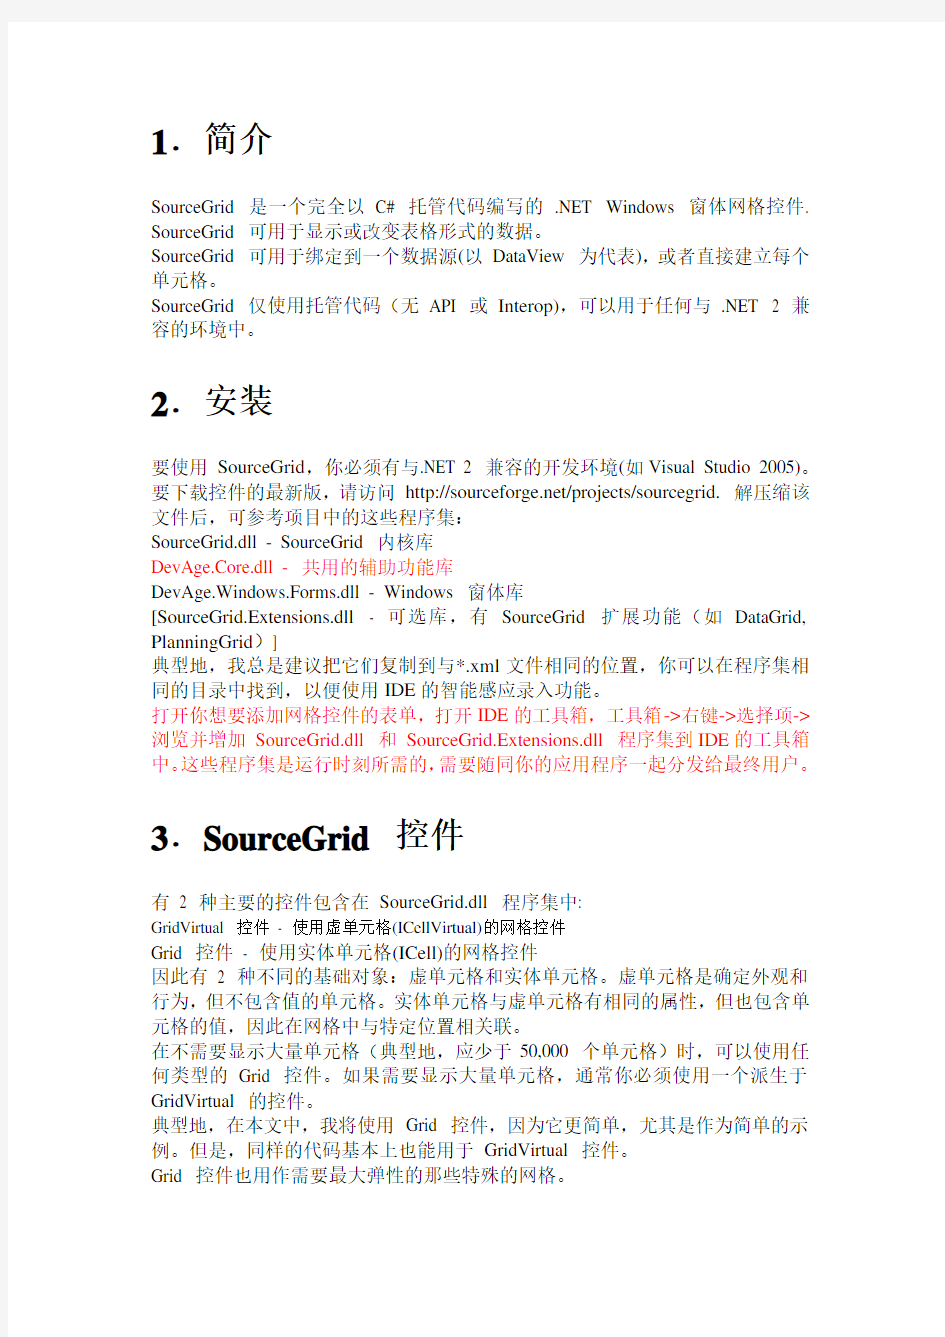 SourceGrid应用中文帮助